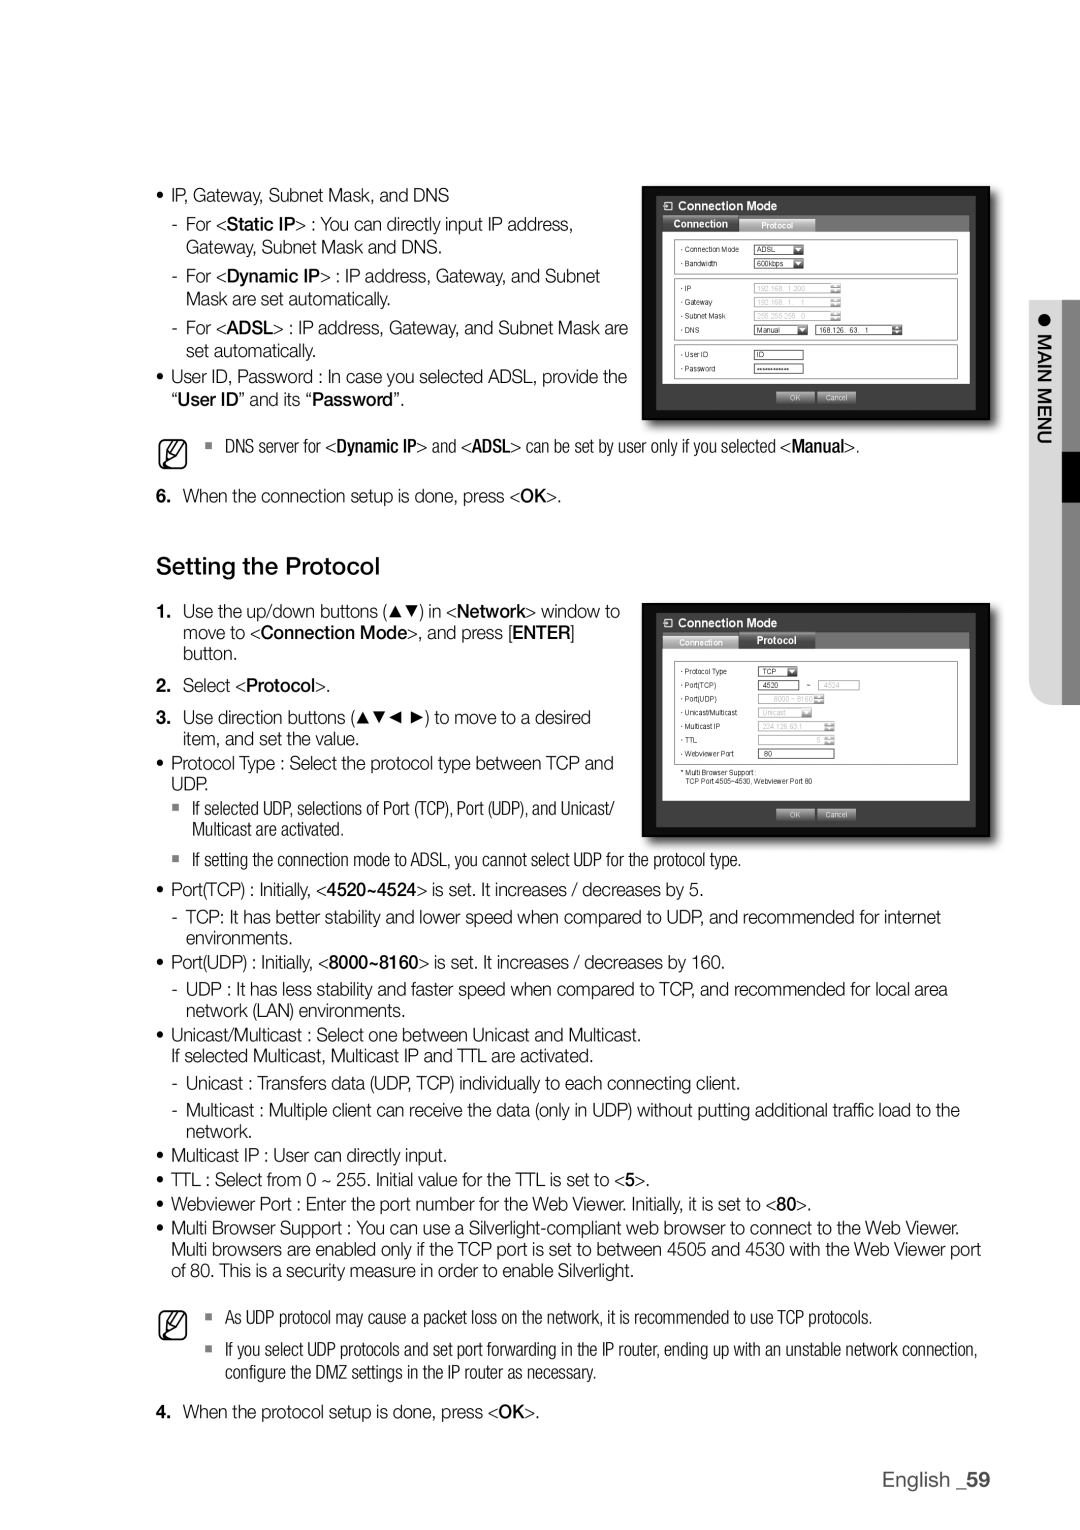 Samsung SDR3100 user manual Setting the Protocol, English _59 